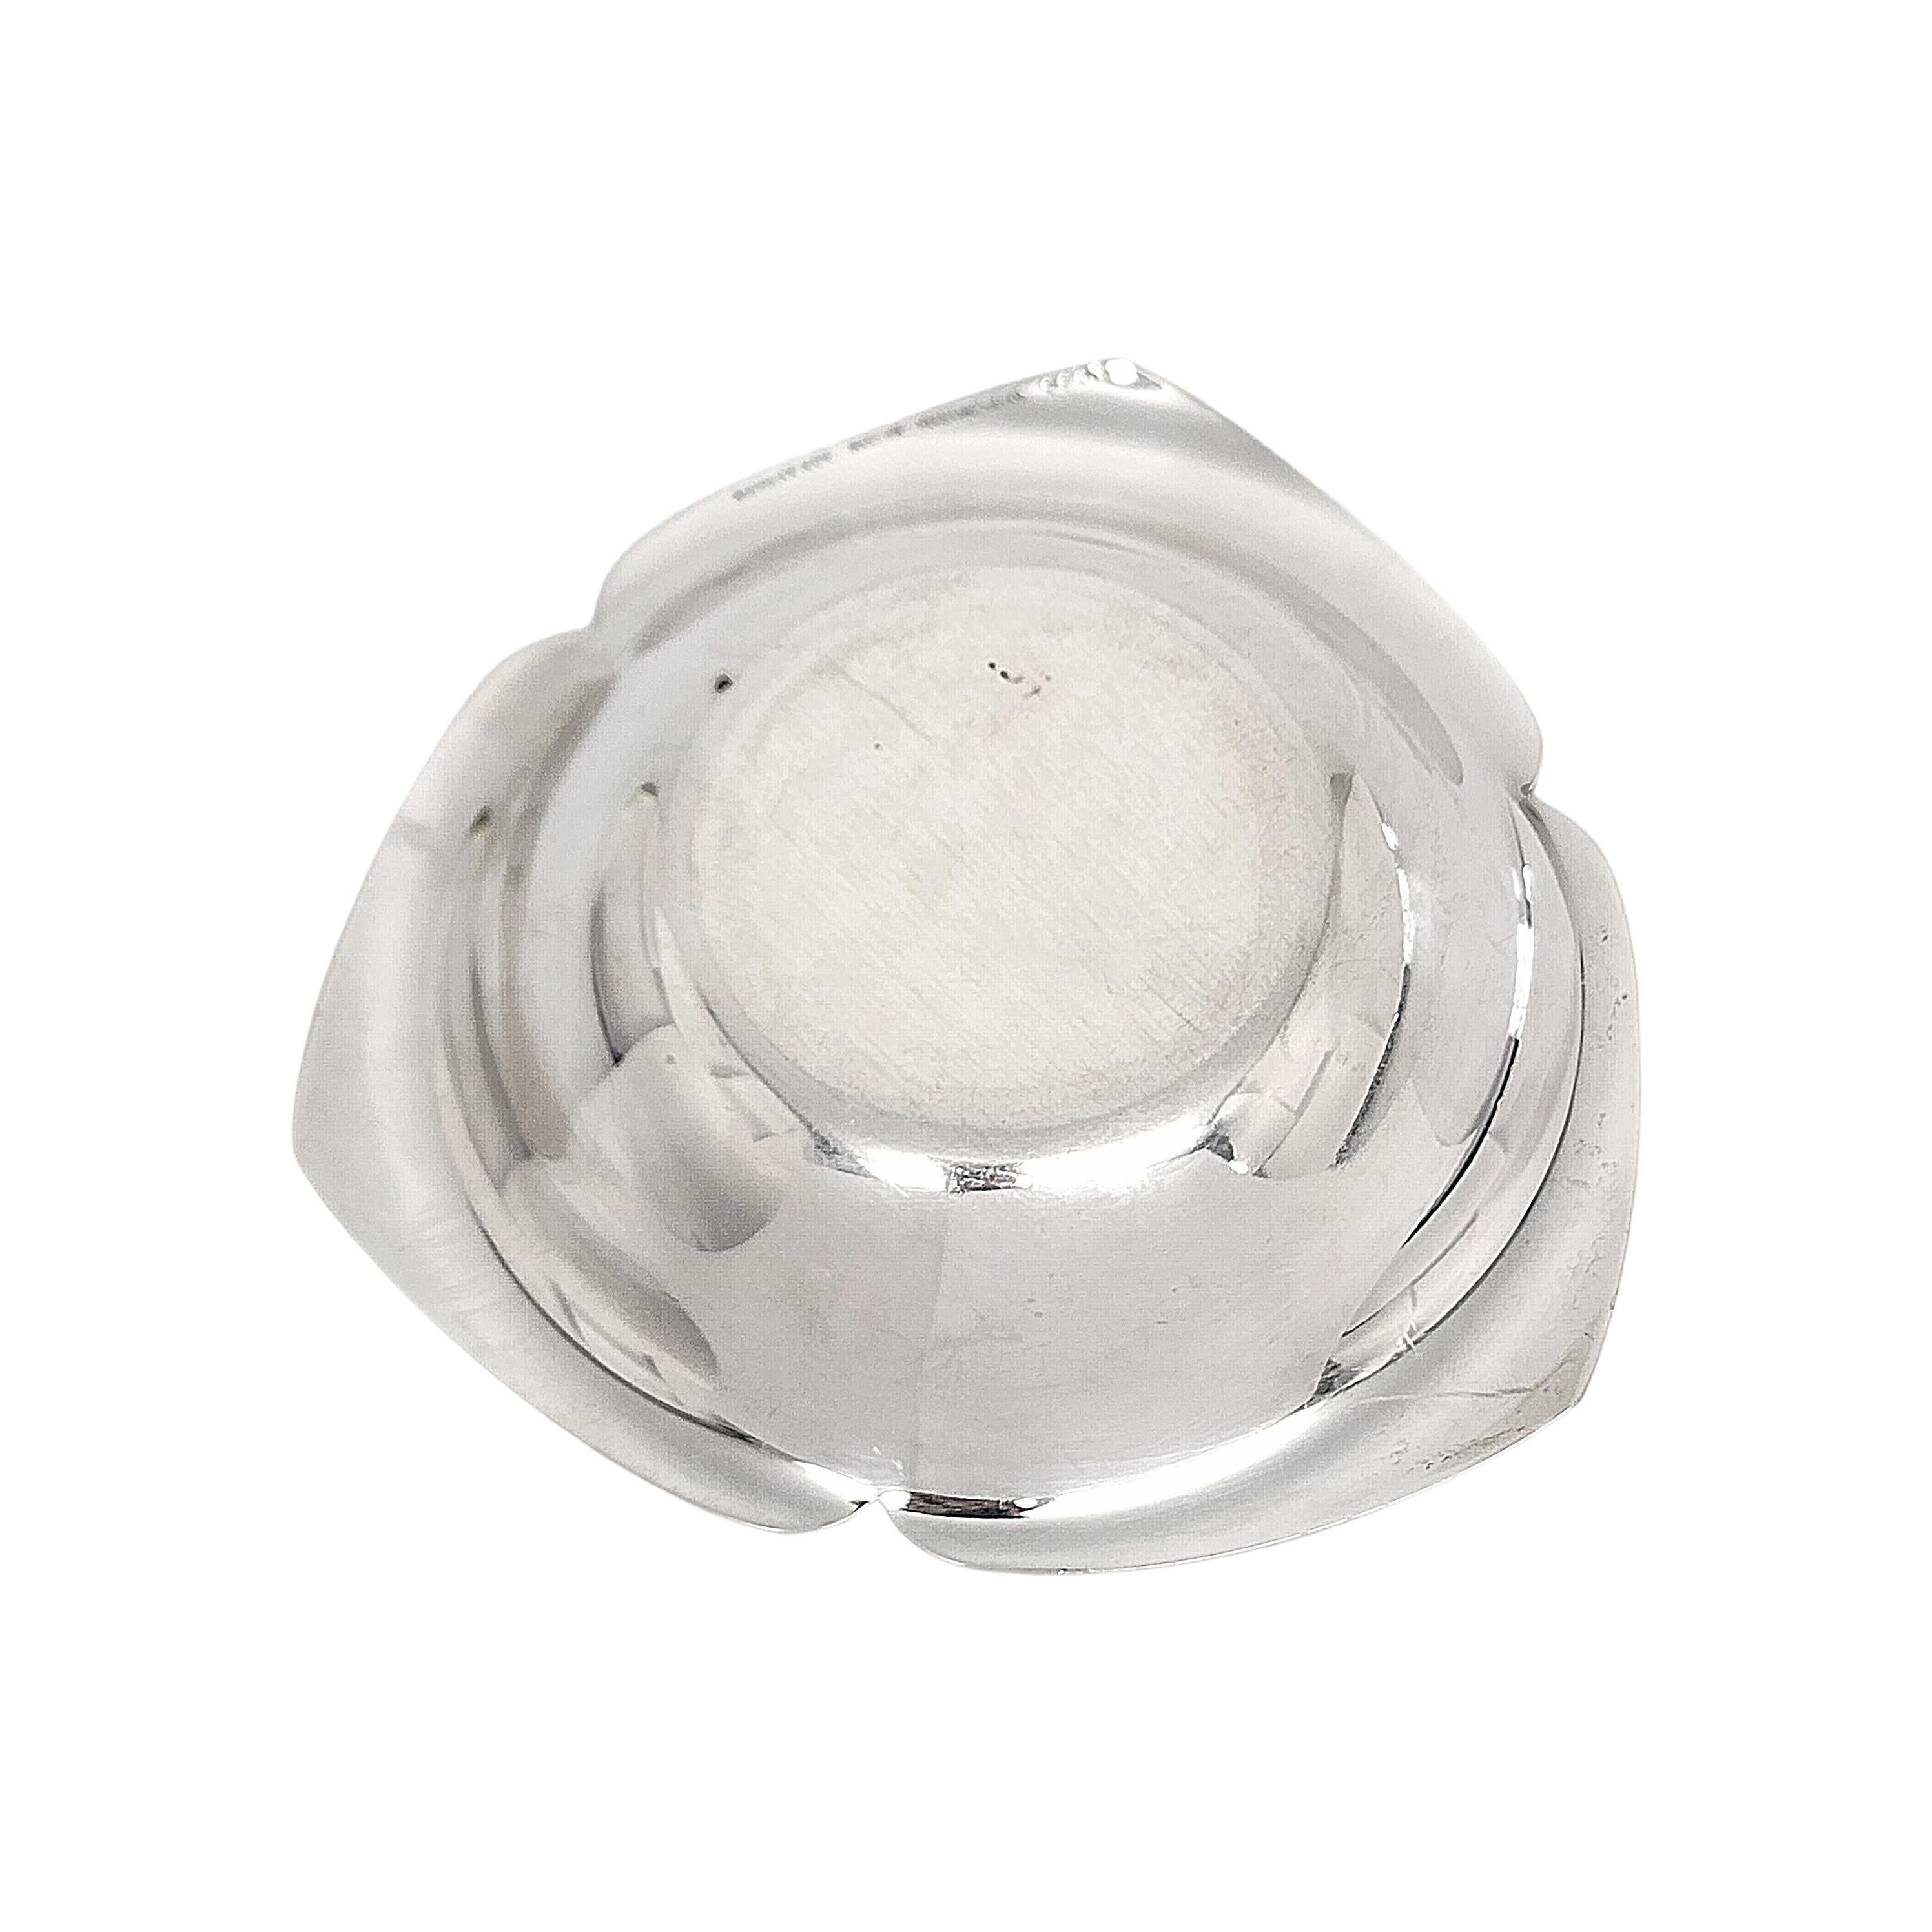 Petit bol à noix en argent Tiffany & Co.

Ce magnifique bol peut être utilisé pour les noix ou les bonbons. Ce bol présente un design en forme de trèfle, des lignes simples avec des pointes arrondies et des bords inférieurs légèrement incurvés. La